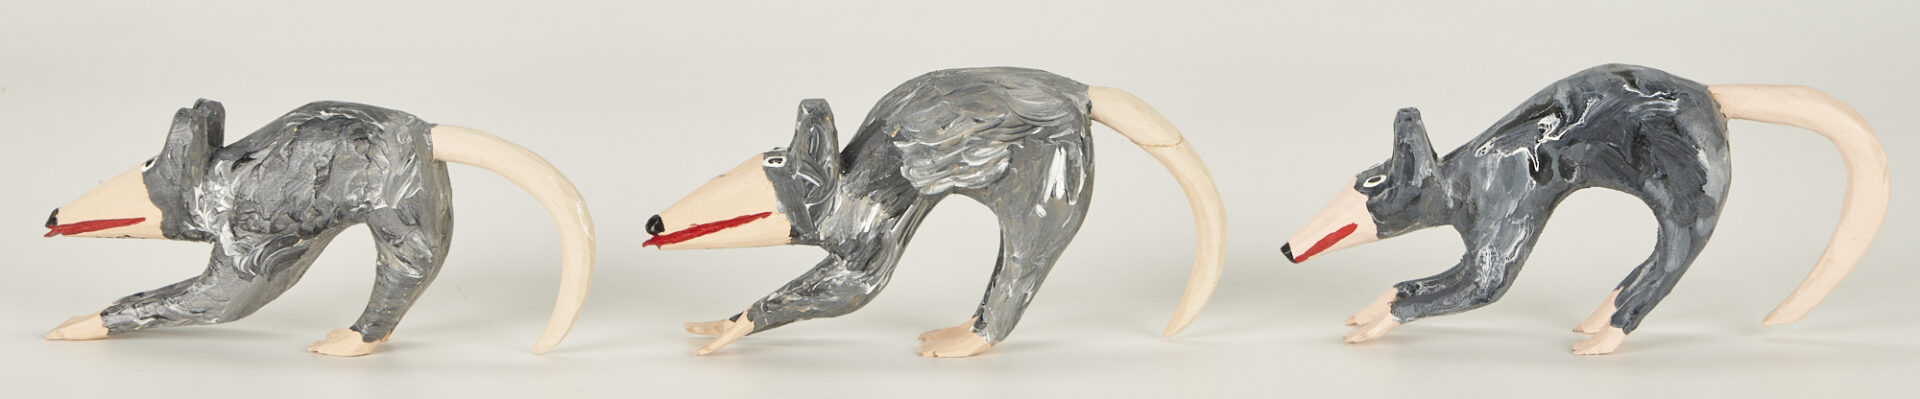 Lot 317: Minnie Adkins, Possum Sculpture w/ 3 Babies